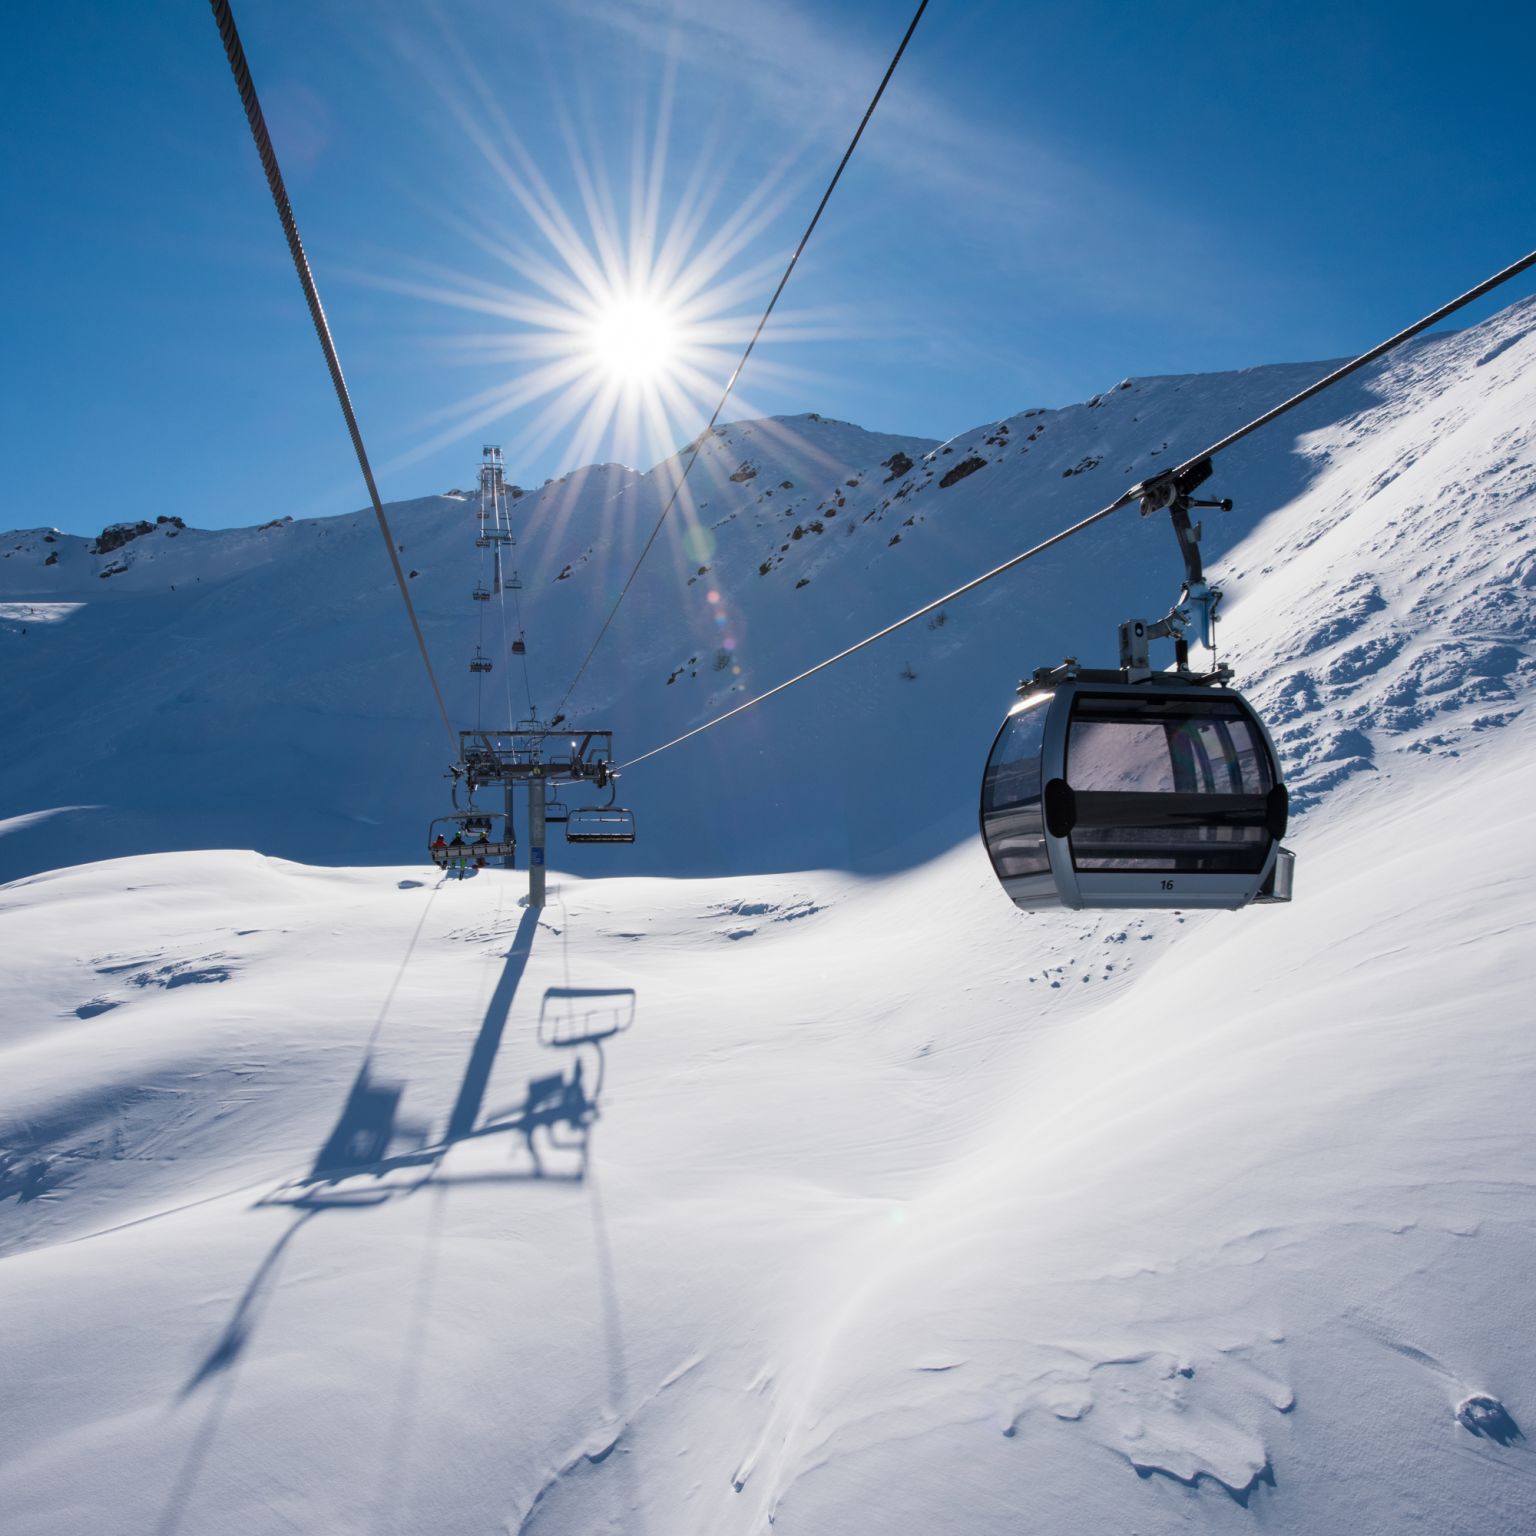 Die Gondelbahn bringt die Skifahrer auf den Gipfel der Pisten von Verbier. Wallis, Schweiz.